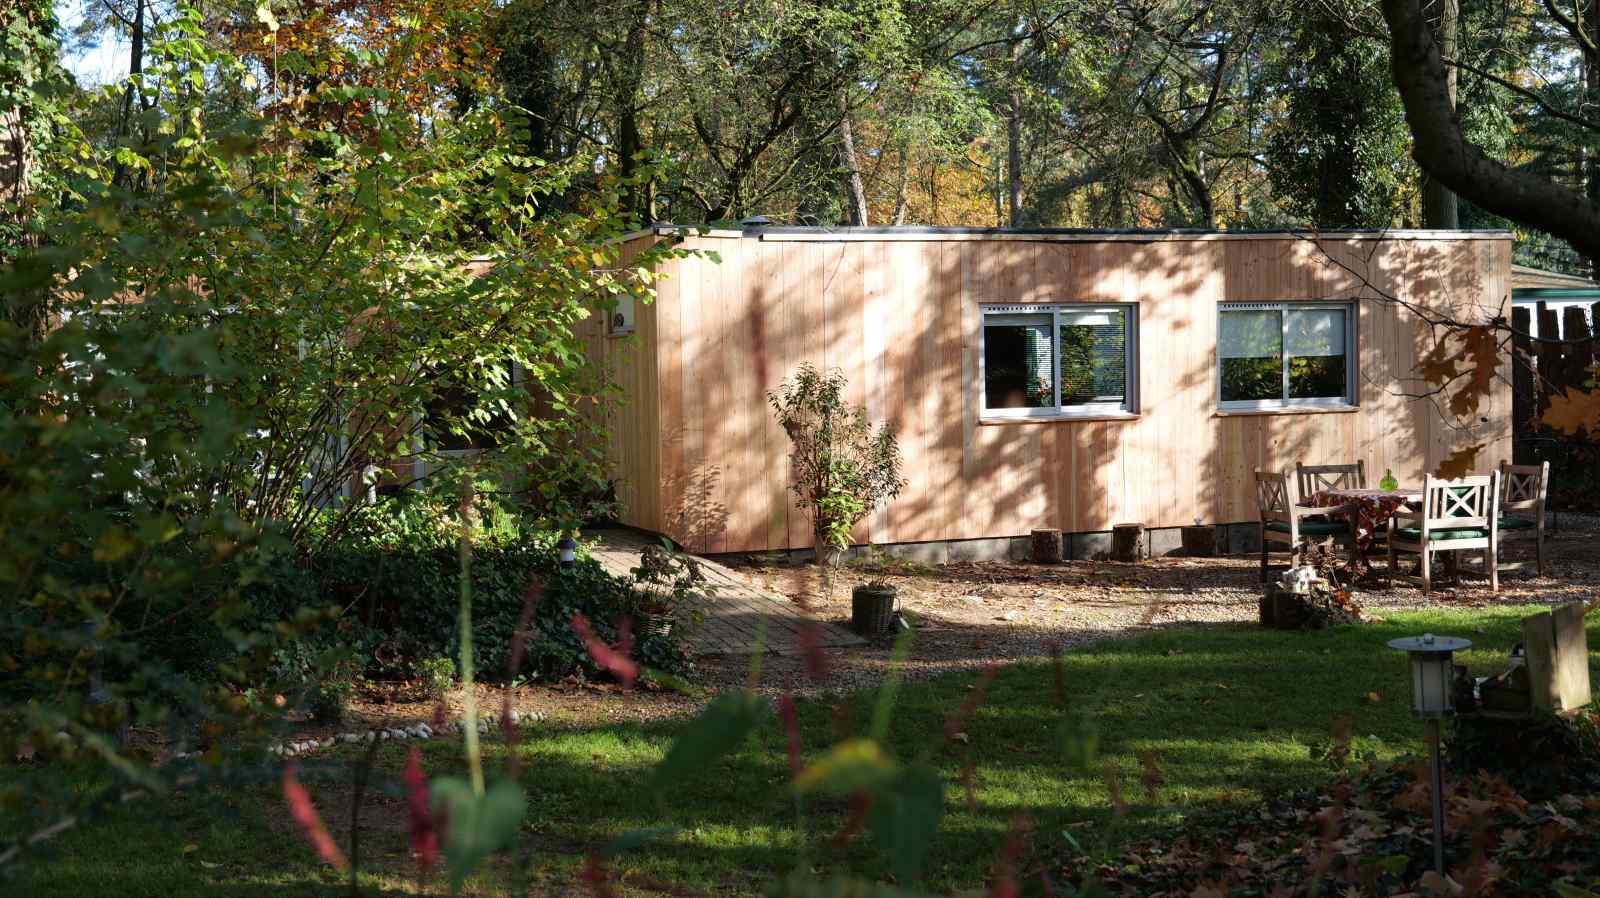 Heerlijkehuisjes.nl Mooi 4 persoons vakantiehuis met infrarood sauna in de Achterhoekse bossen - Nederland - Europa - Lochem